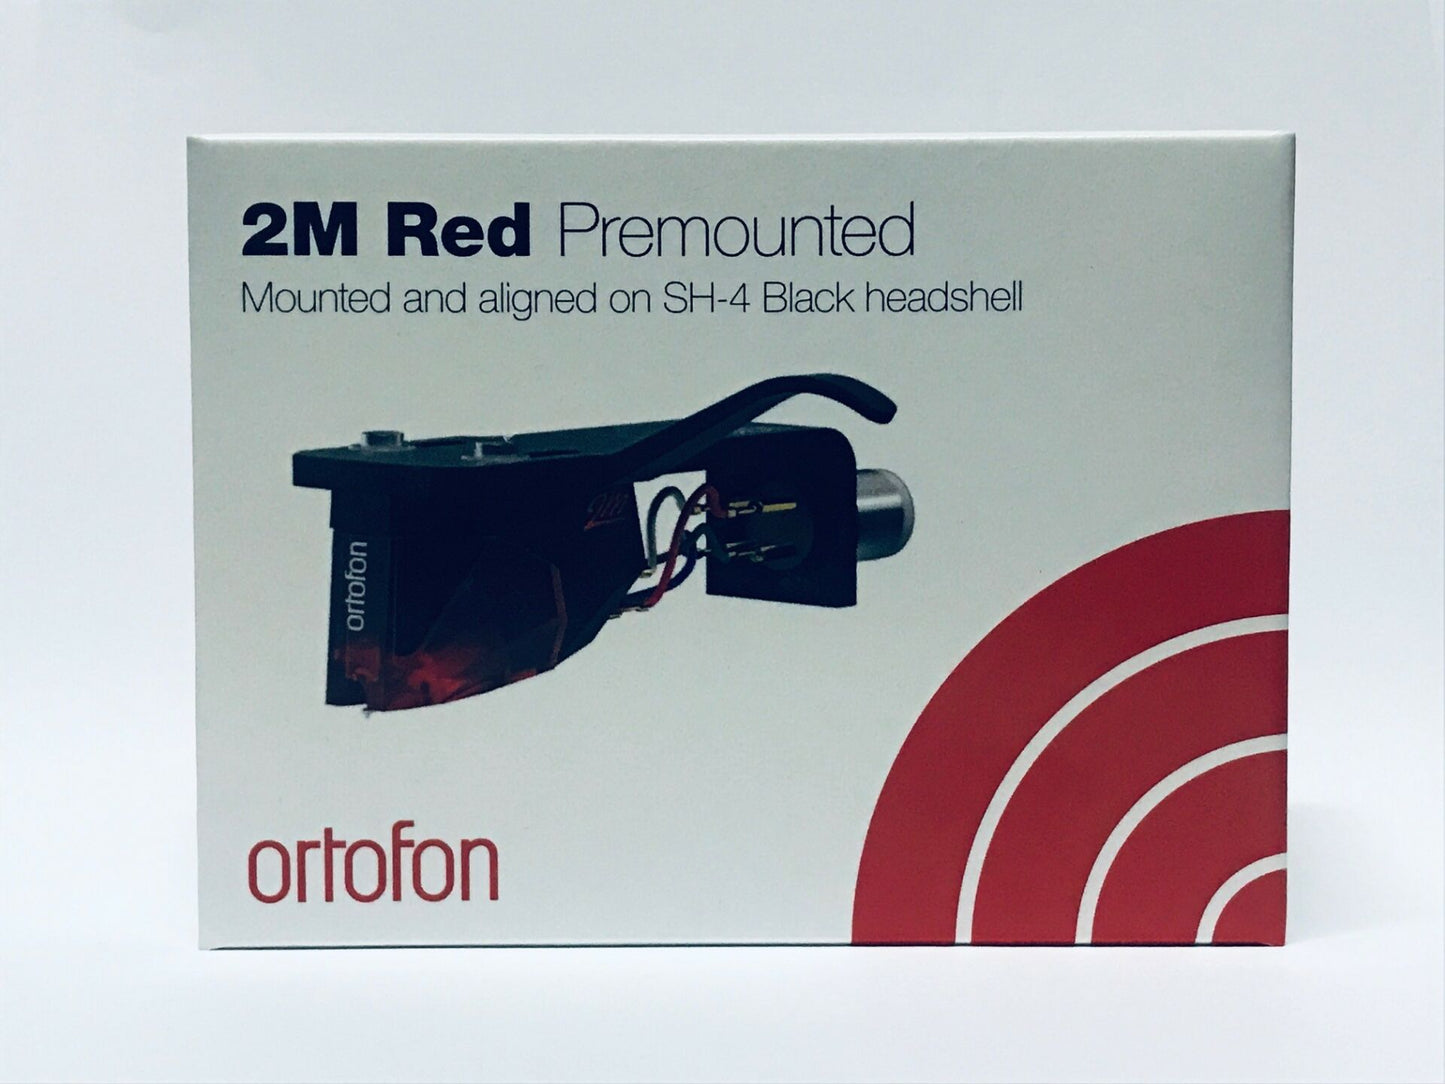 2M Red Premounted (2M Red + SH-4 Black)